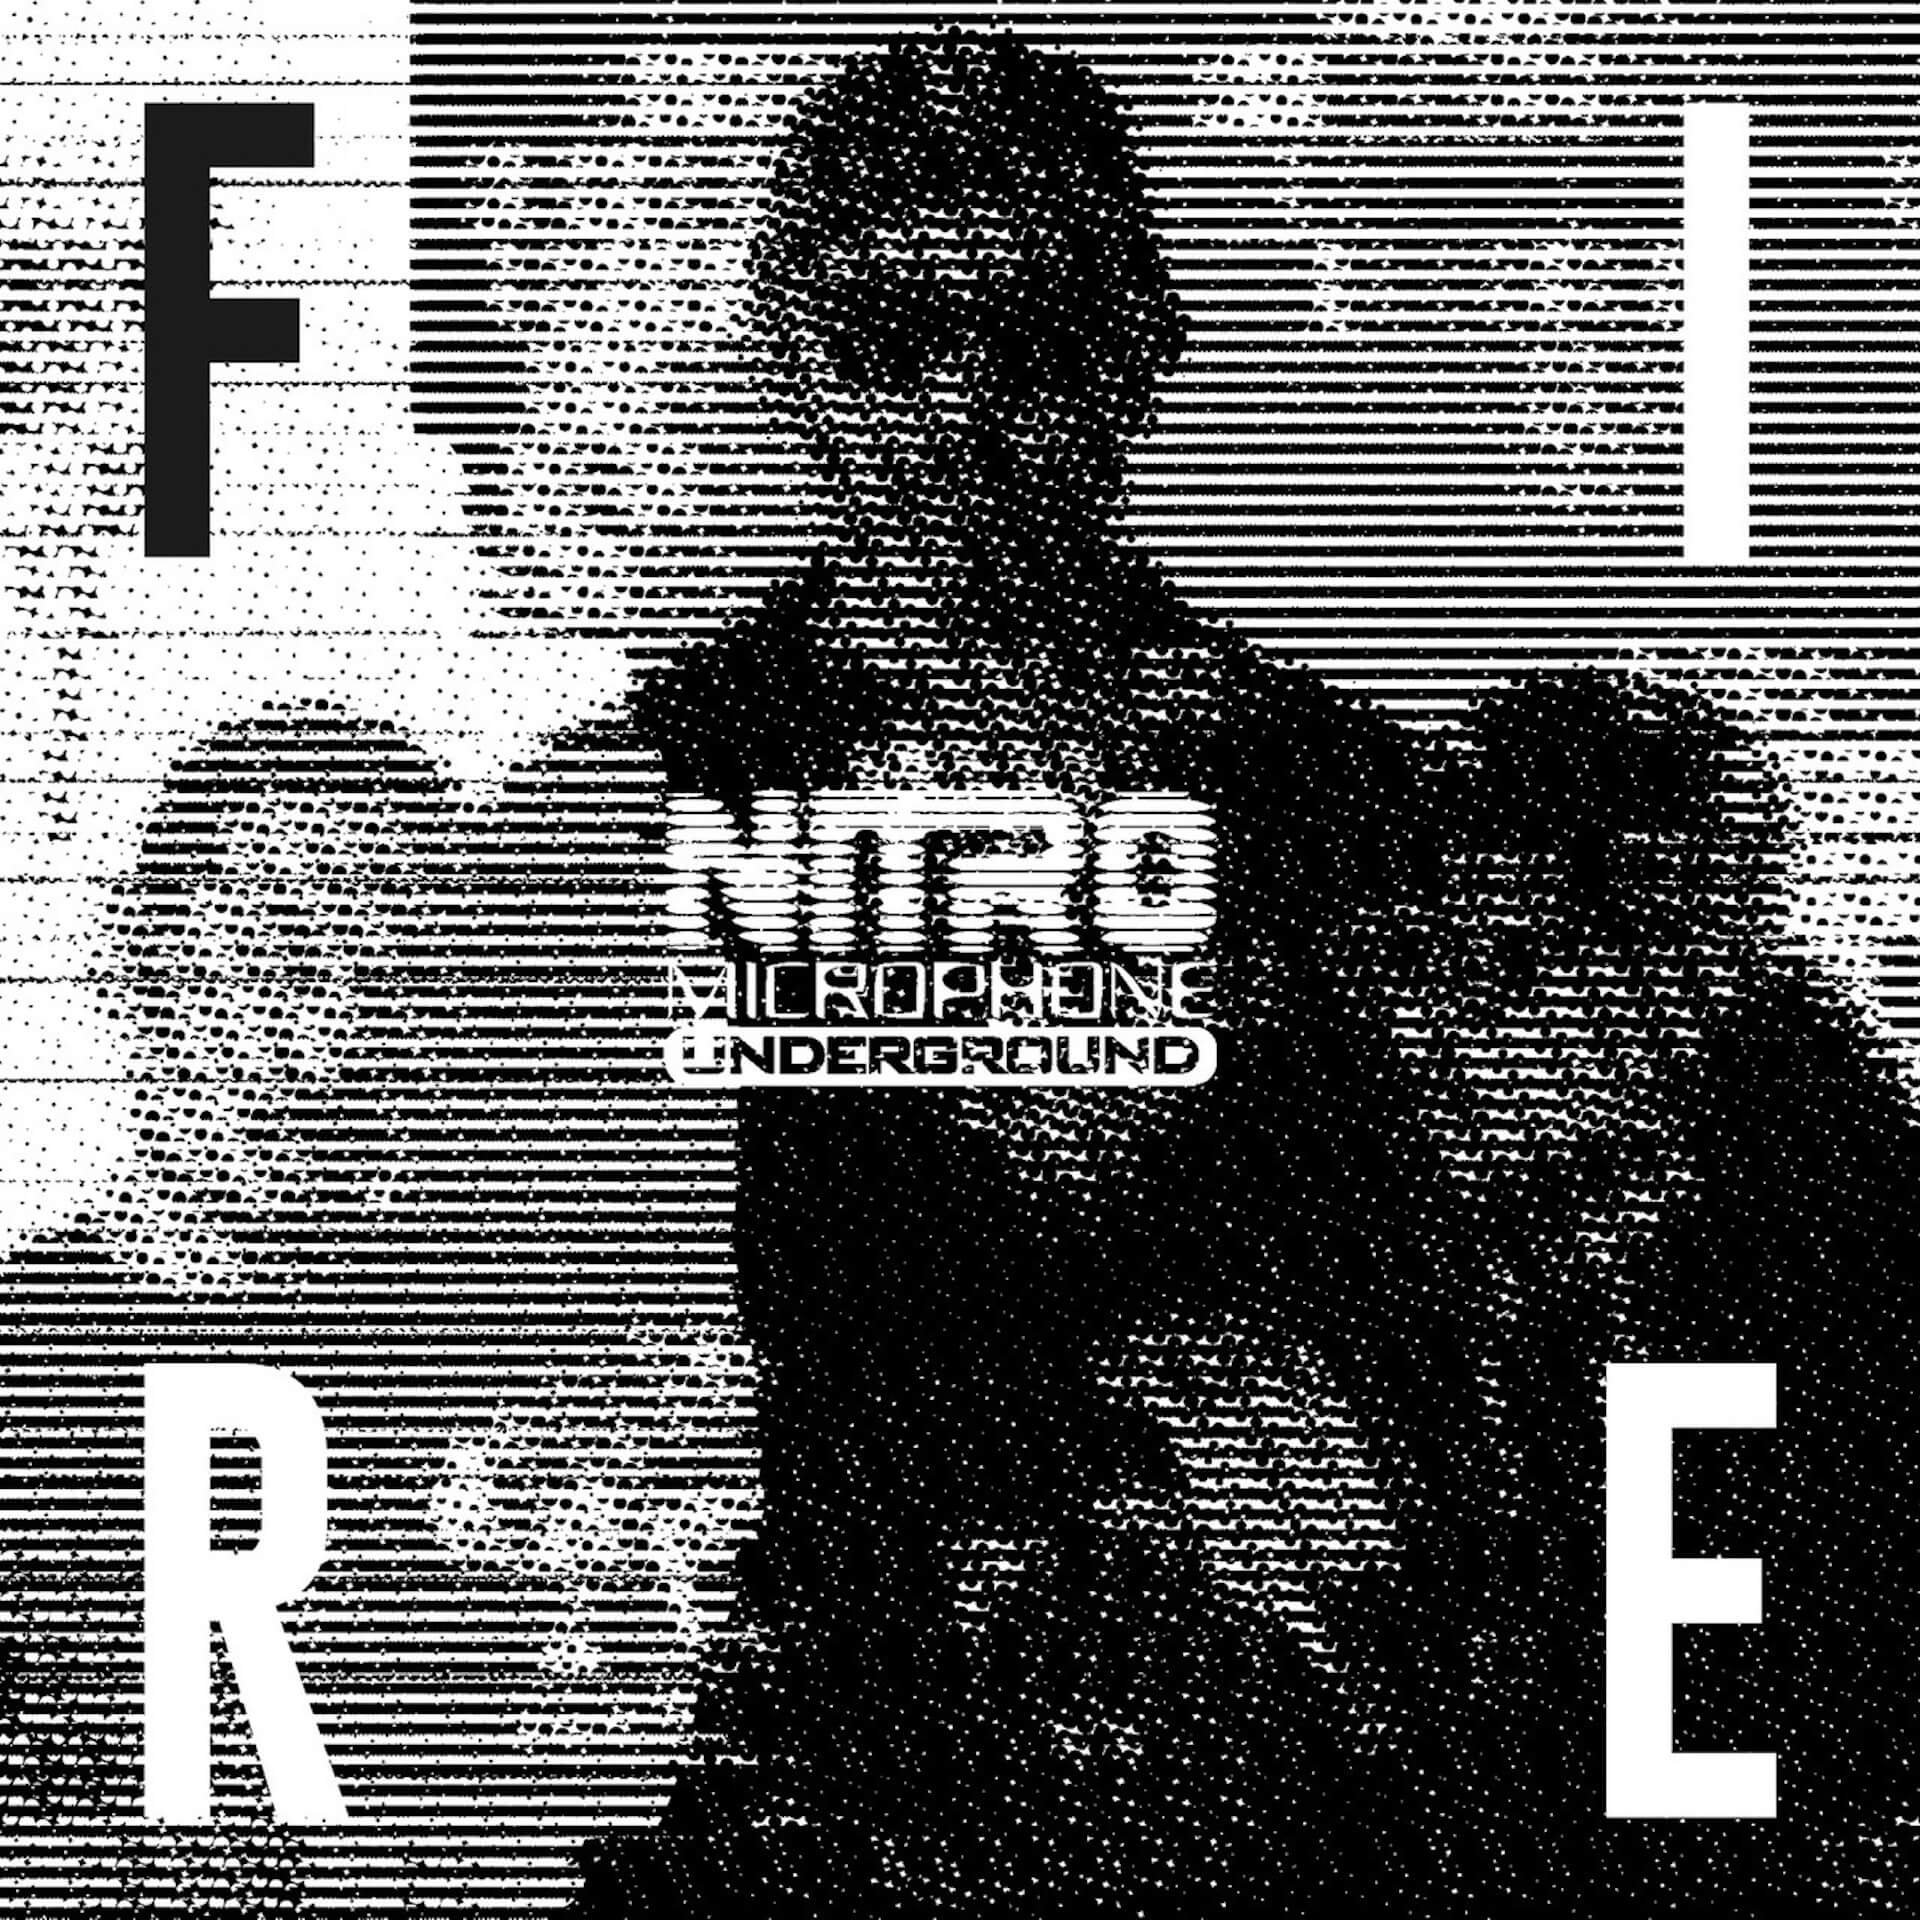 NITRO MICROPHONE UNDERGROUND、12年ぶりのフルアルバム「SE7EN」をリリース｜ジャケットデザインは河村康介が担当 music221216-NITRO-MICROPHONE-UNDERGROUND2